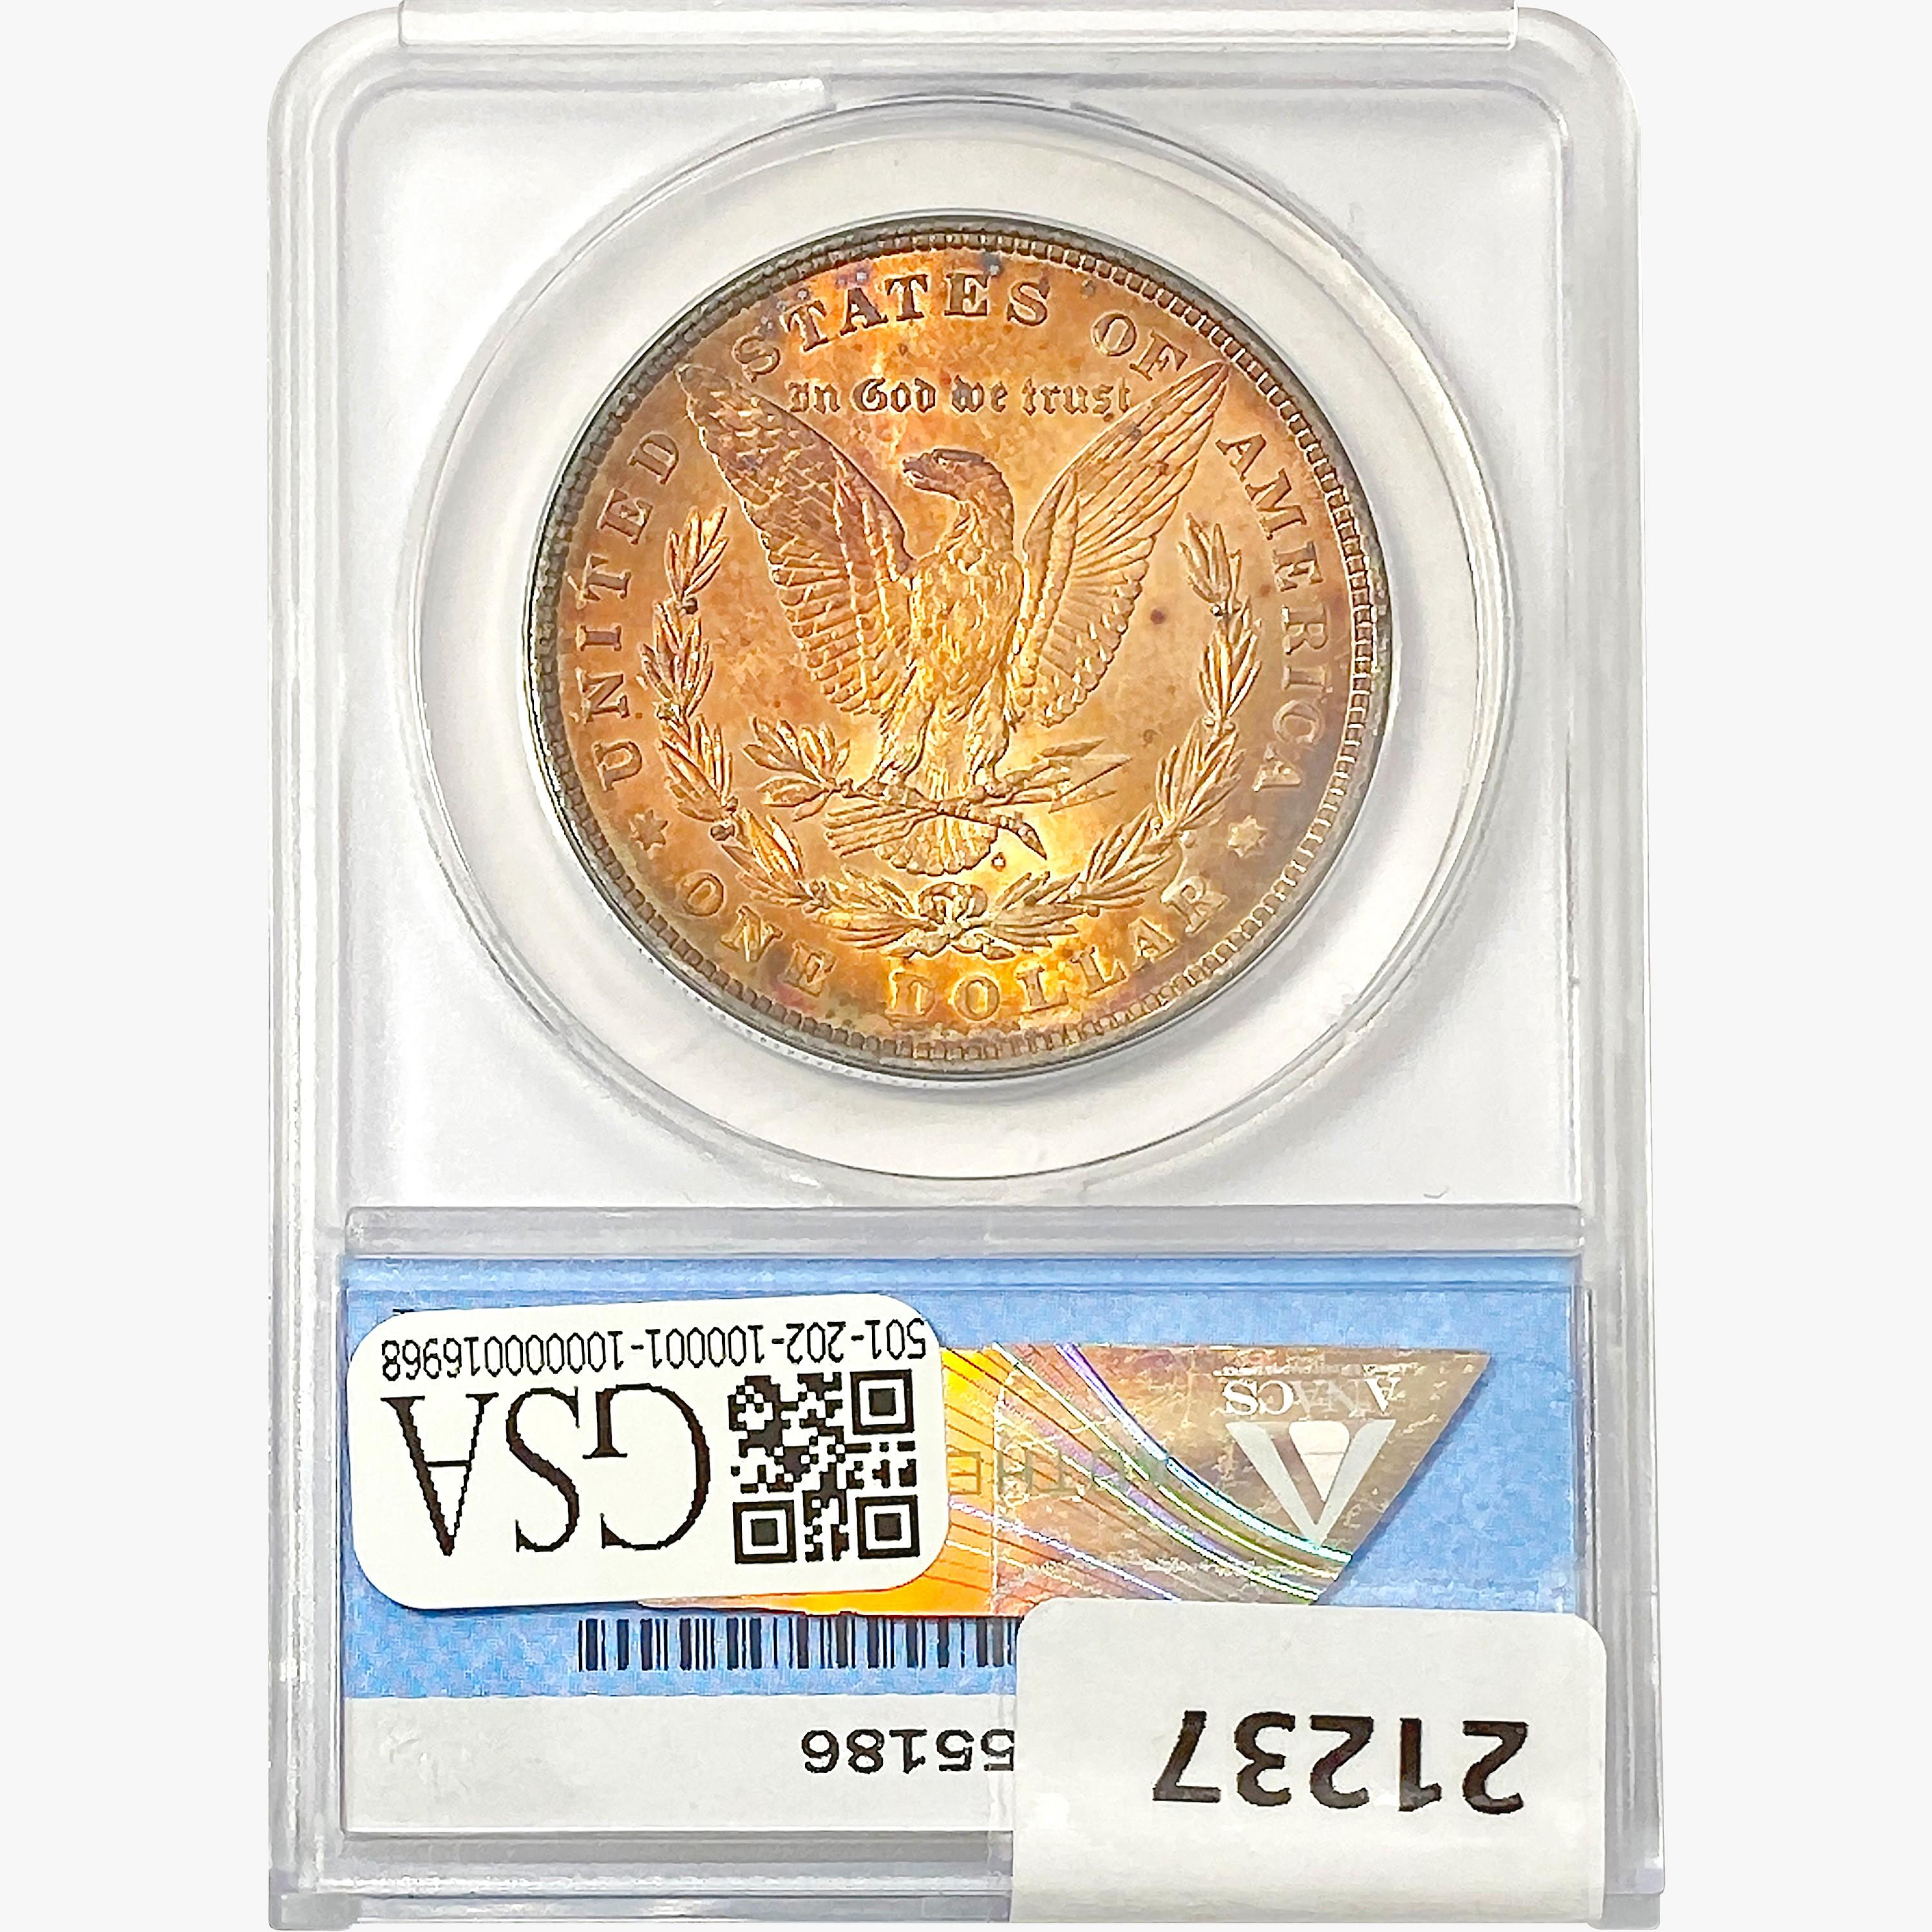 1878 8TF Morgan Silver Dollar ANACS MS64 OBV PL VA